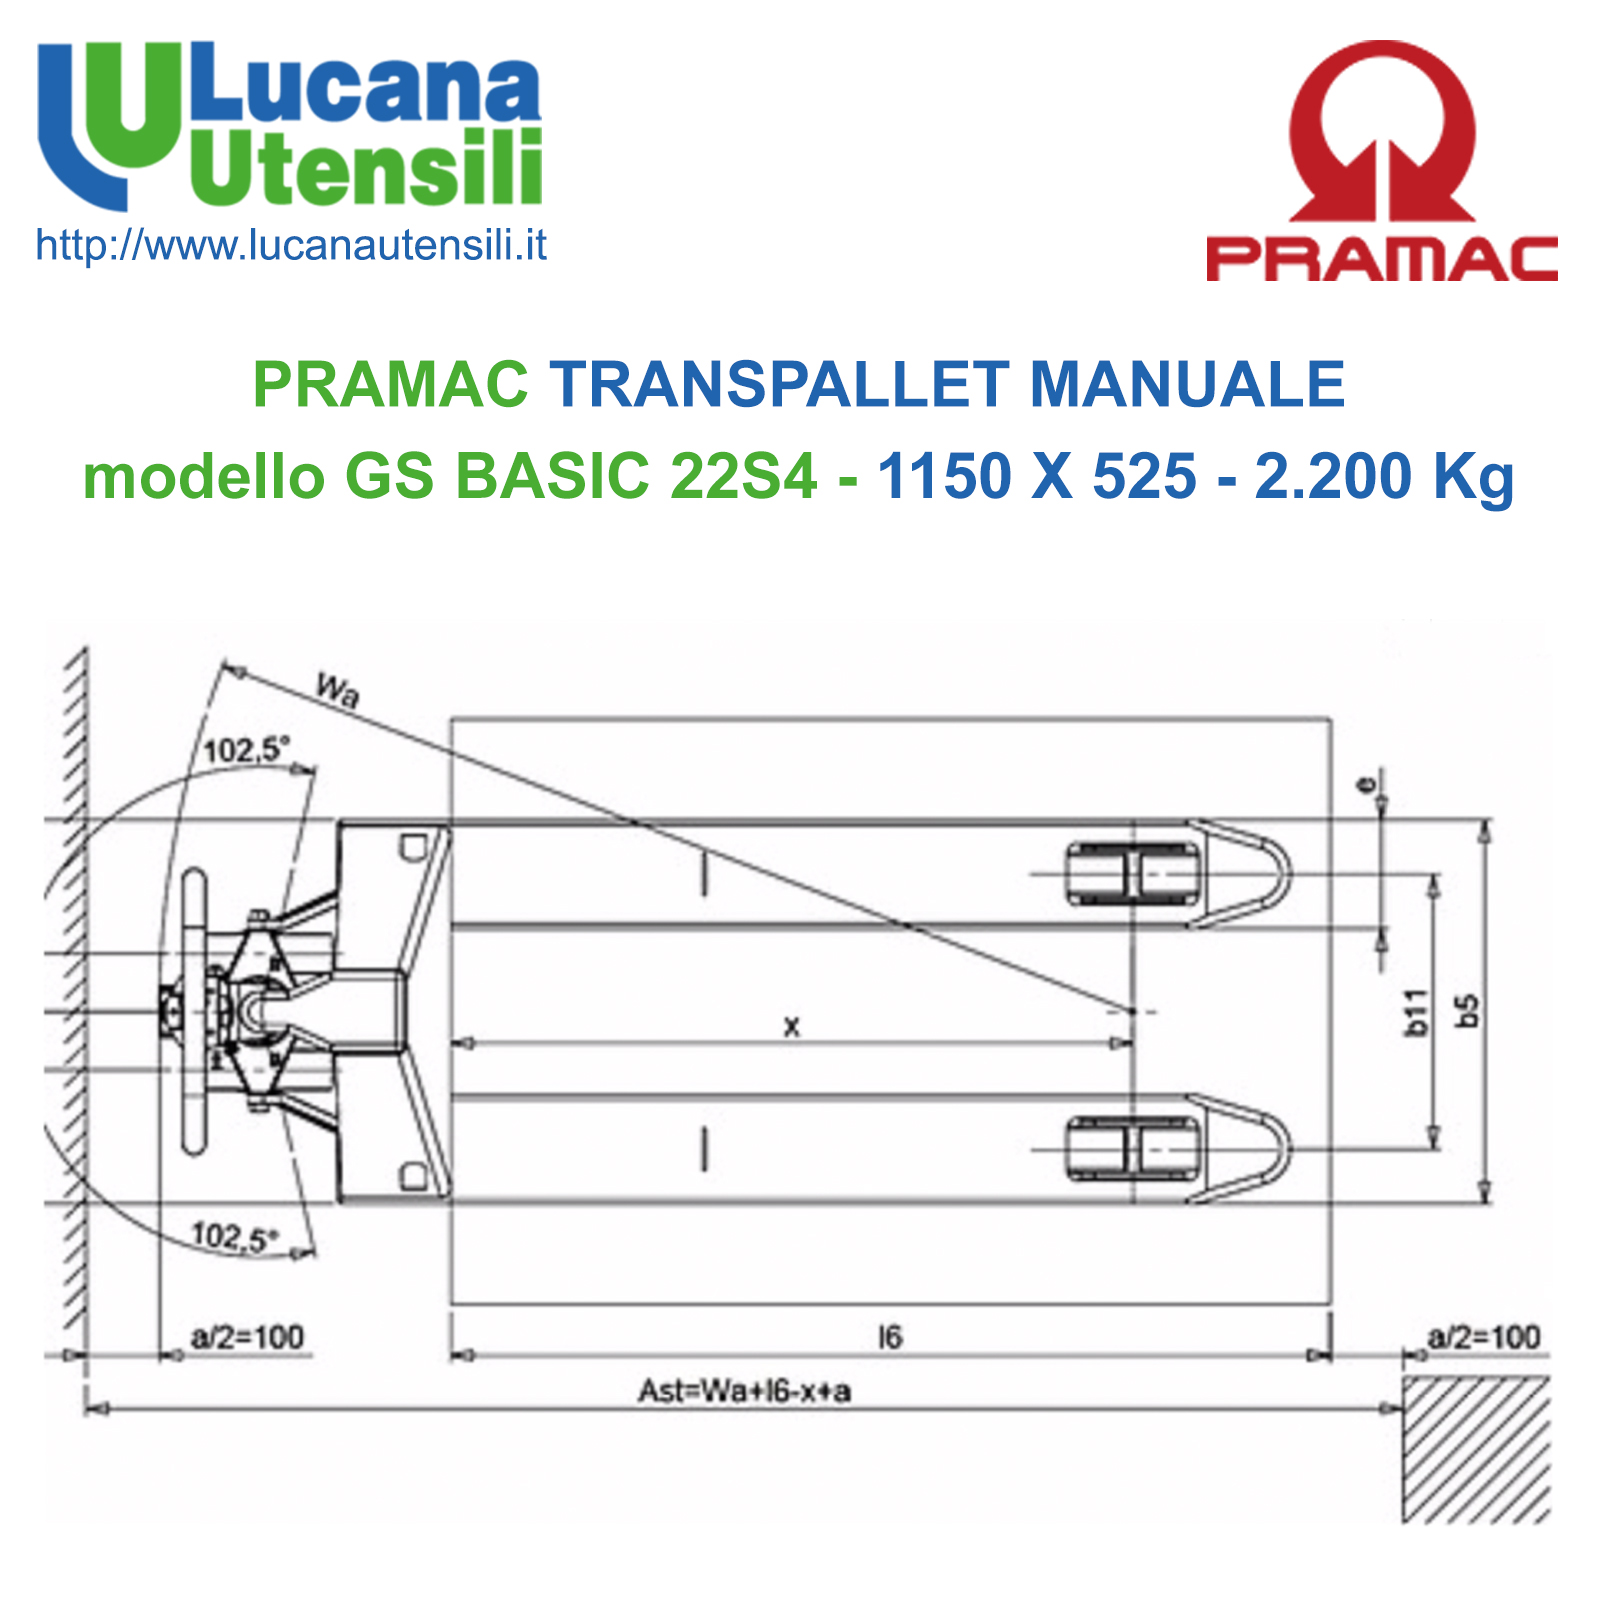 2.200 Kg Transpallet Carrello manuale Gs basic 22S4 